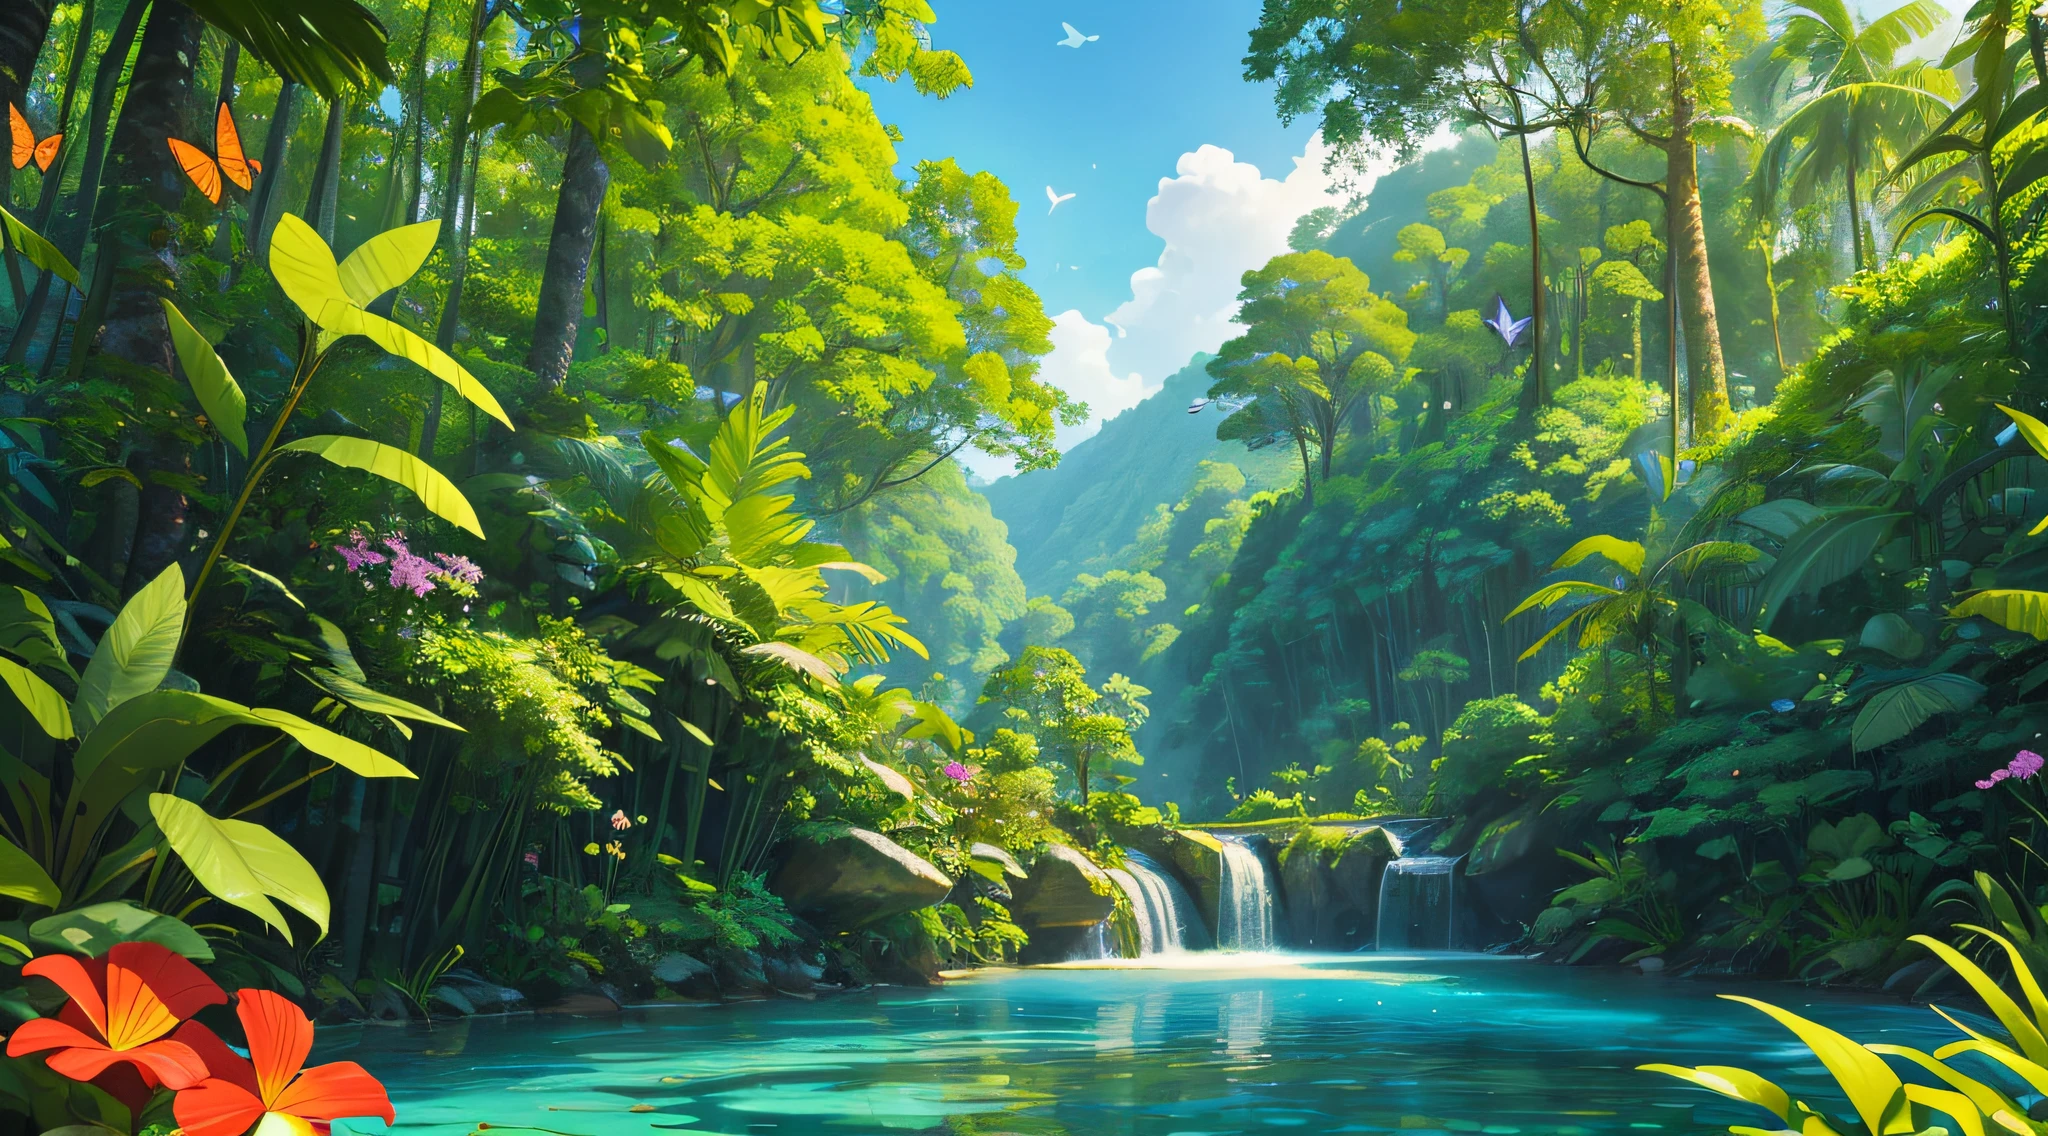 захватывающий дух пейзаж тропических лесов, с высокими деревьями, птицы, бабочки, цветы и спокойный ручей под голубым небом.